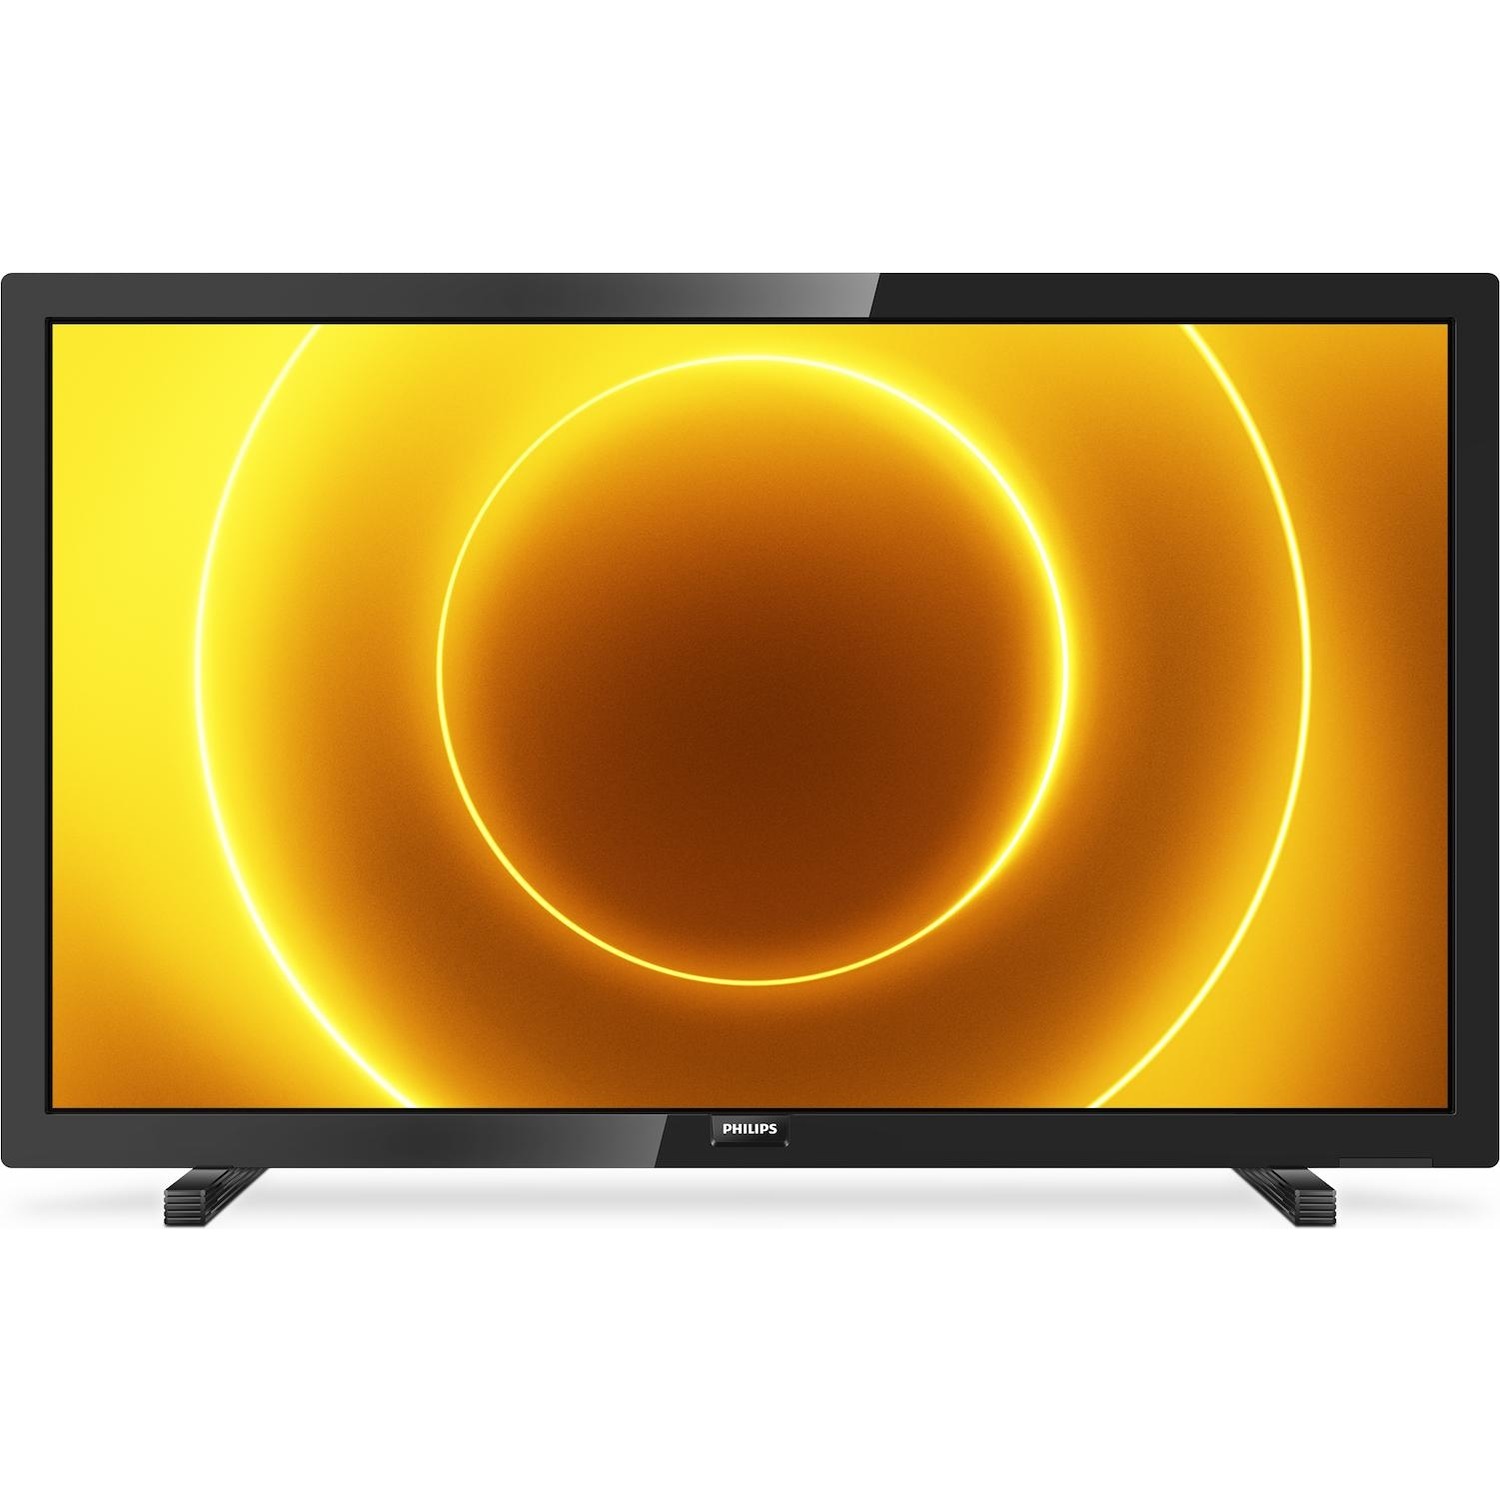 Immagine per TV LED Philips 24PFS5505 da DIMOStore